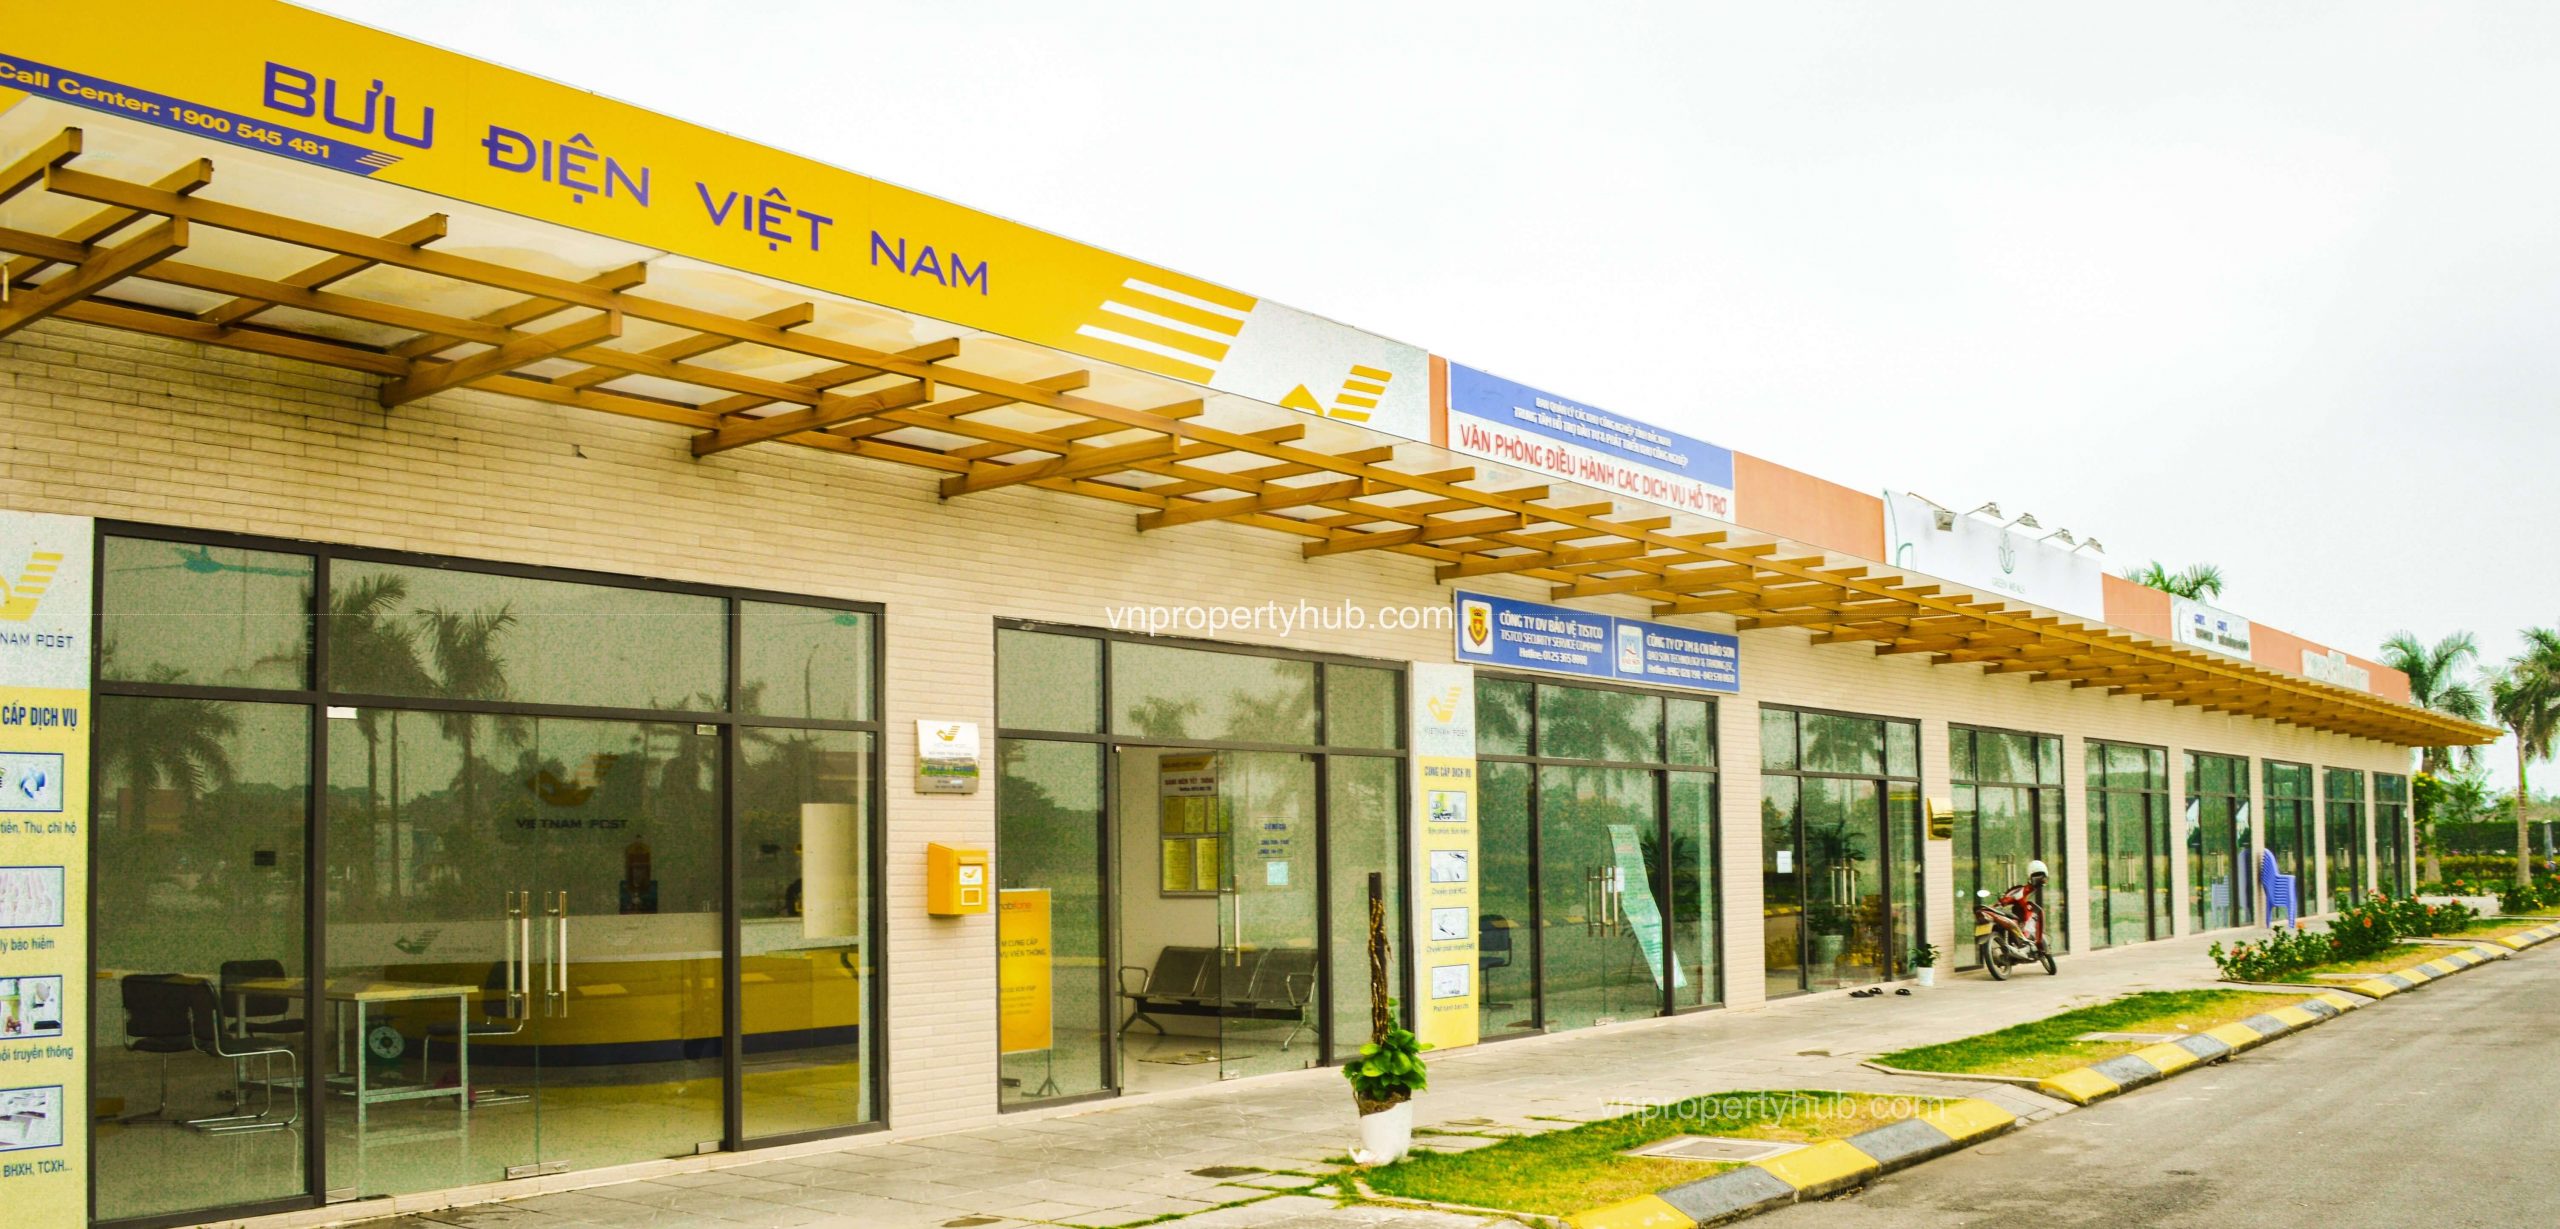 Hình ảnh bưu điện Việt Nam tại Khu công nghiệp VSIP Bắc Ninh